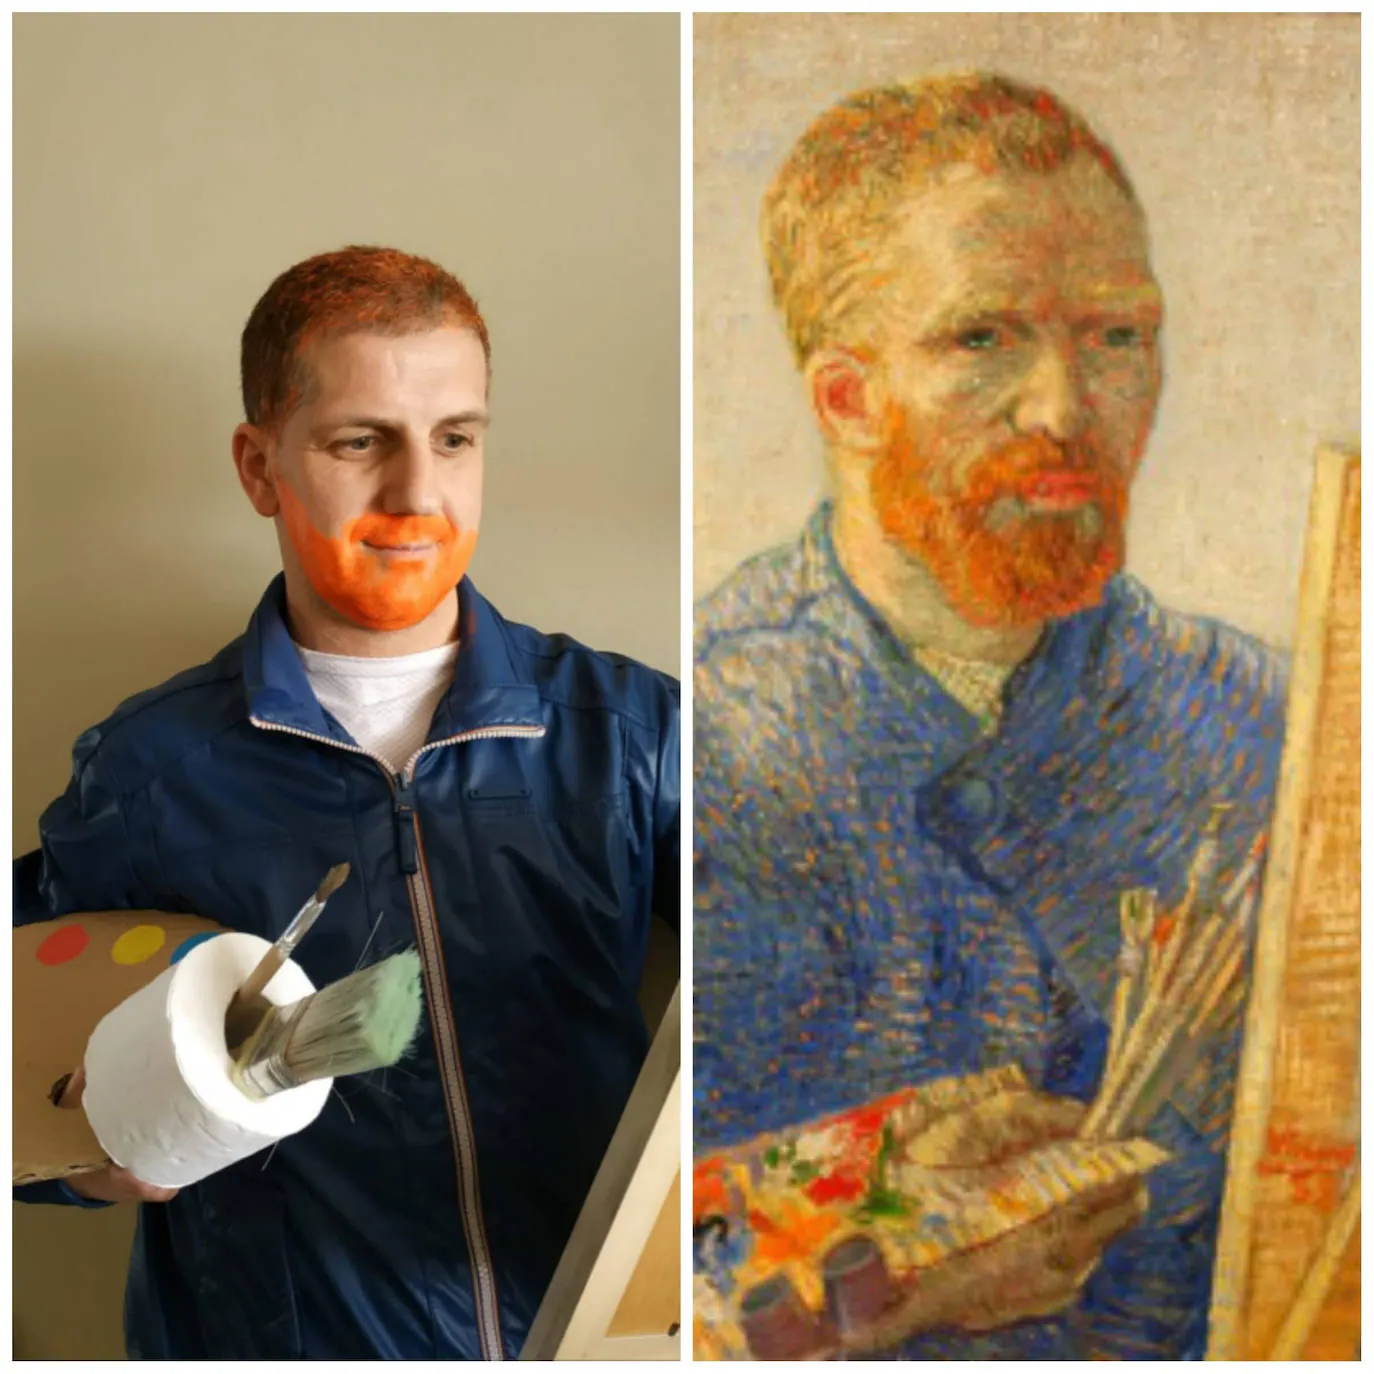 Título del cuadro: ‘Autorretrato como pintor’. Autor/a: Vincent van Gogh. Pintado: 1887. Maestro/a imitador: Javier Claramunt, Maestro de Educación Física.